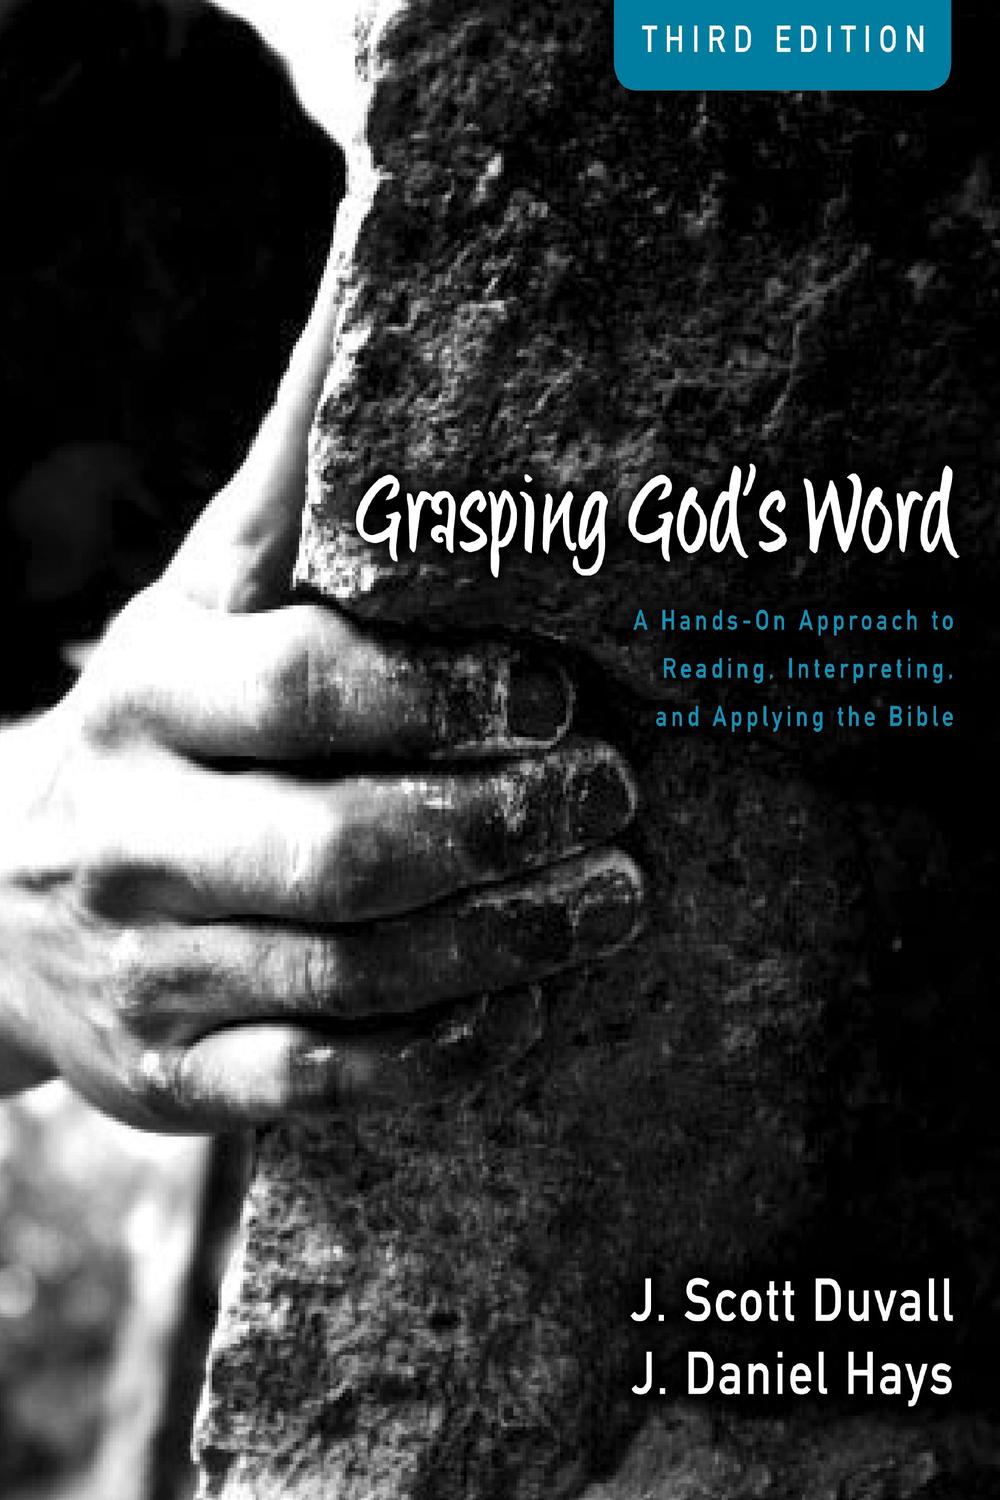 Grasping God's Word Workbook - J. Scott Duvall, J. Daniel Hays